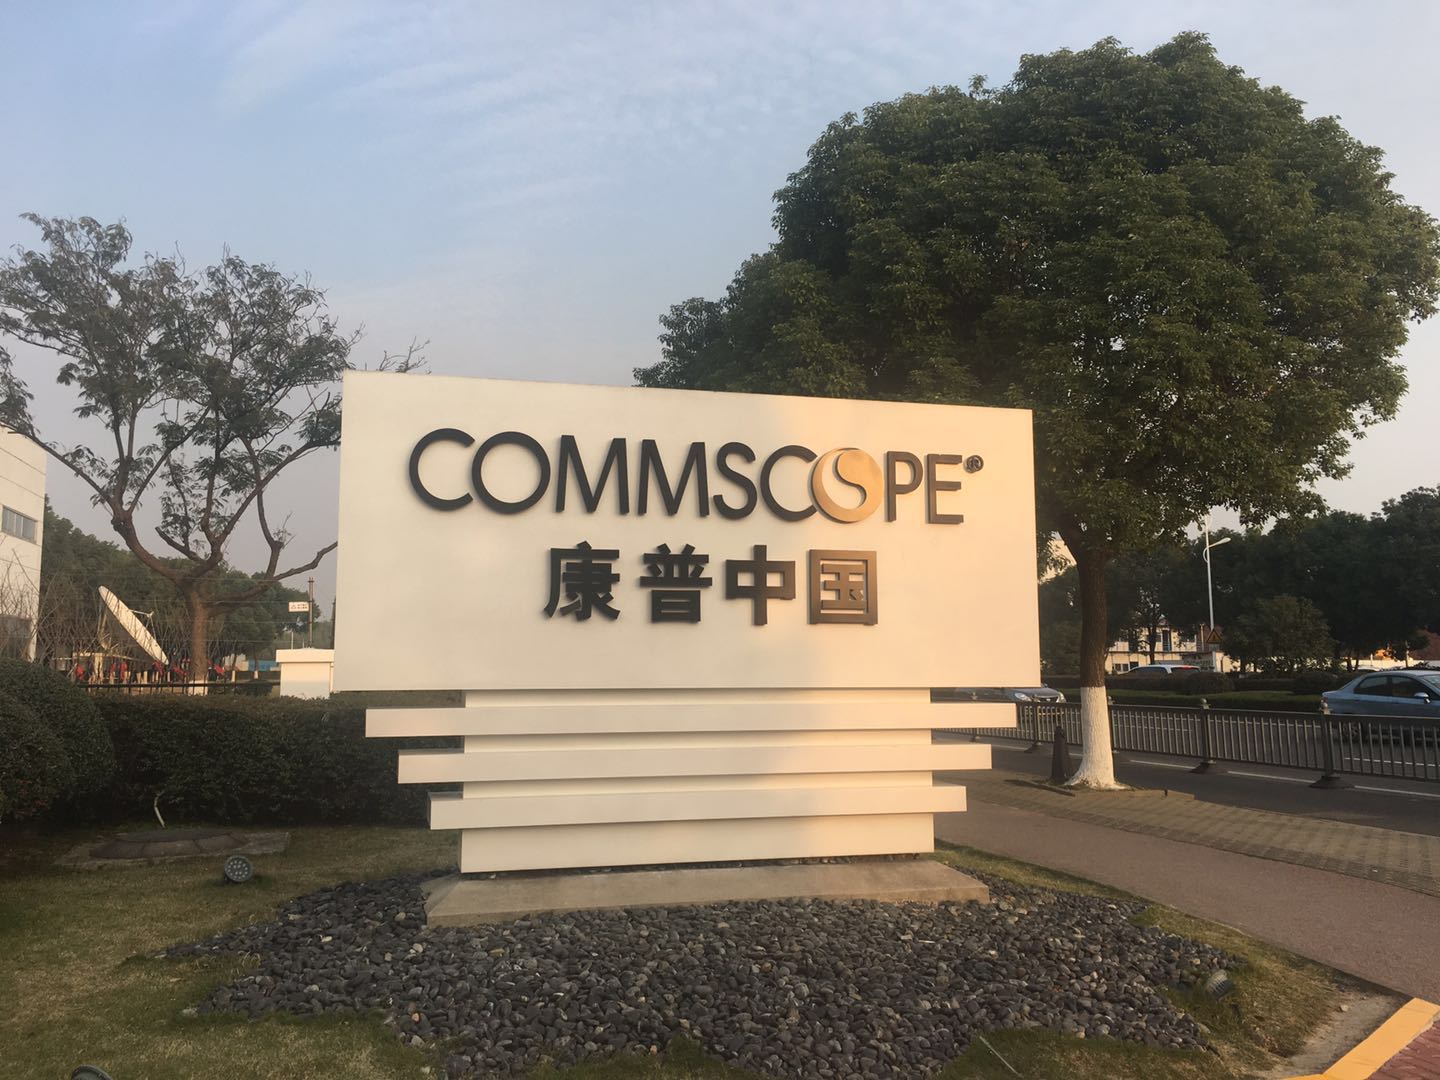 走访康普中国首家工厂:植根20年 着力“连接”数字化创新 - 通信产业网 - 中国通信第一产经门户